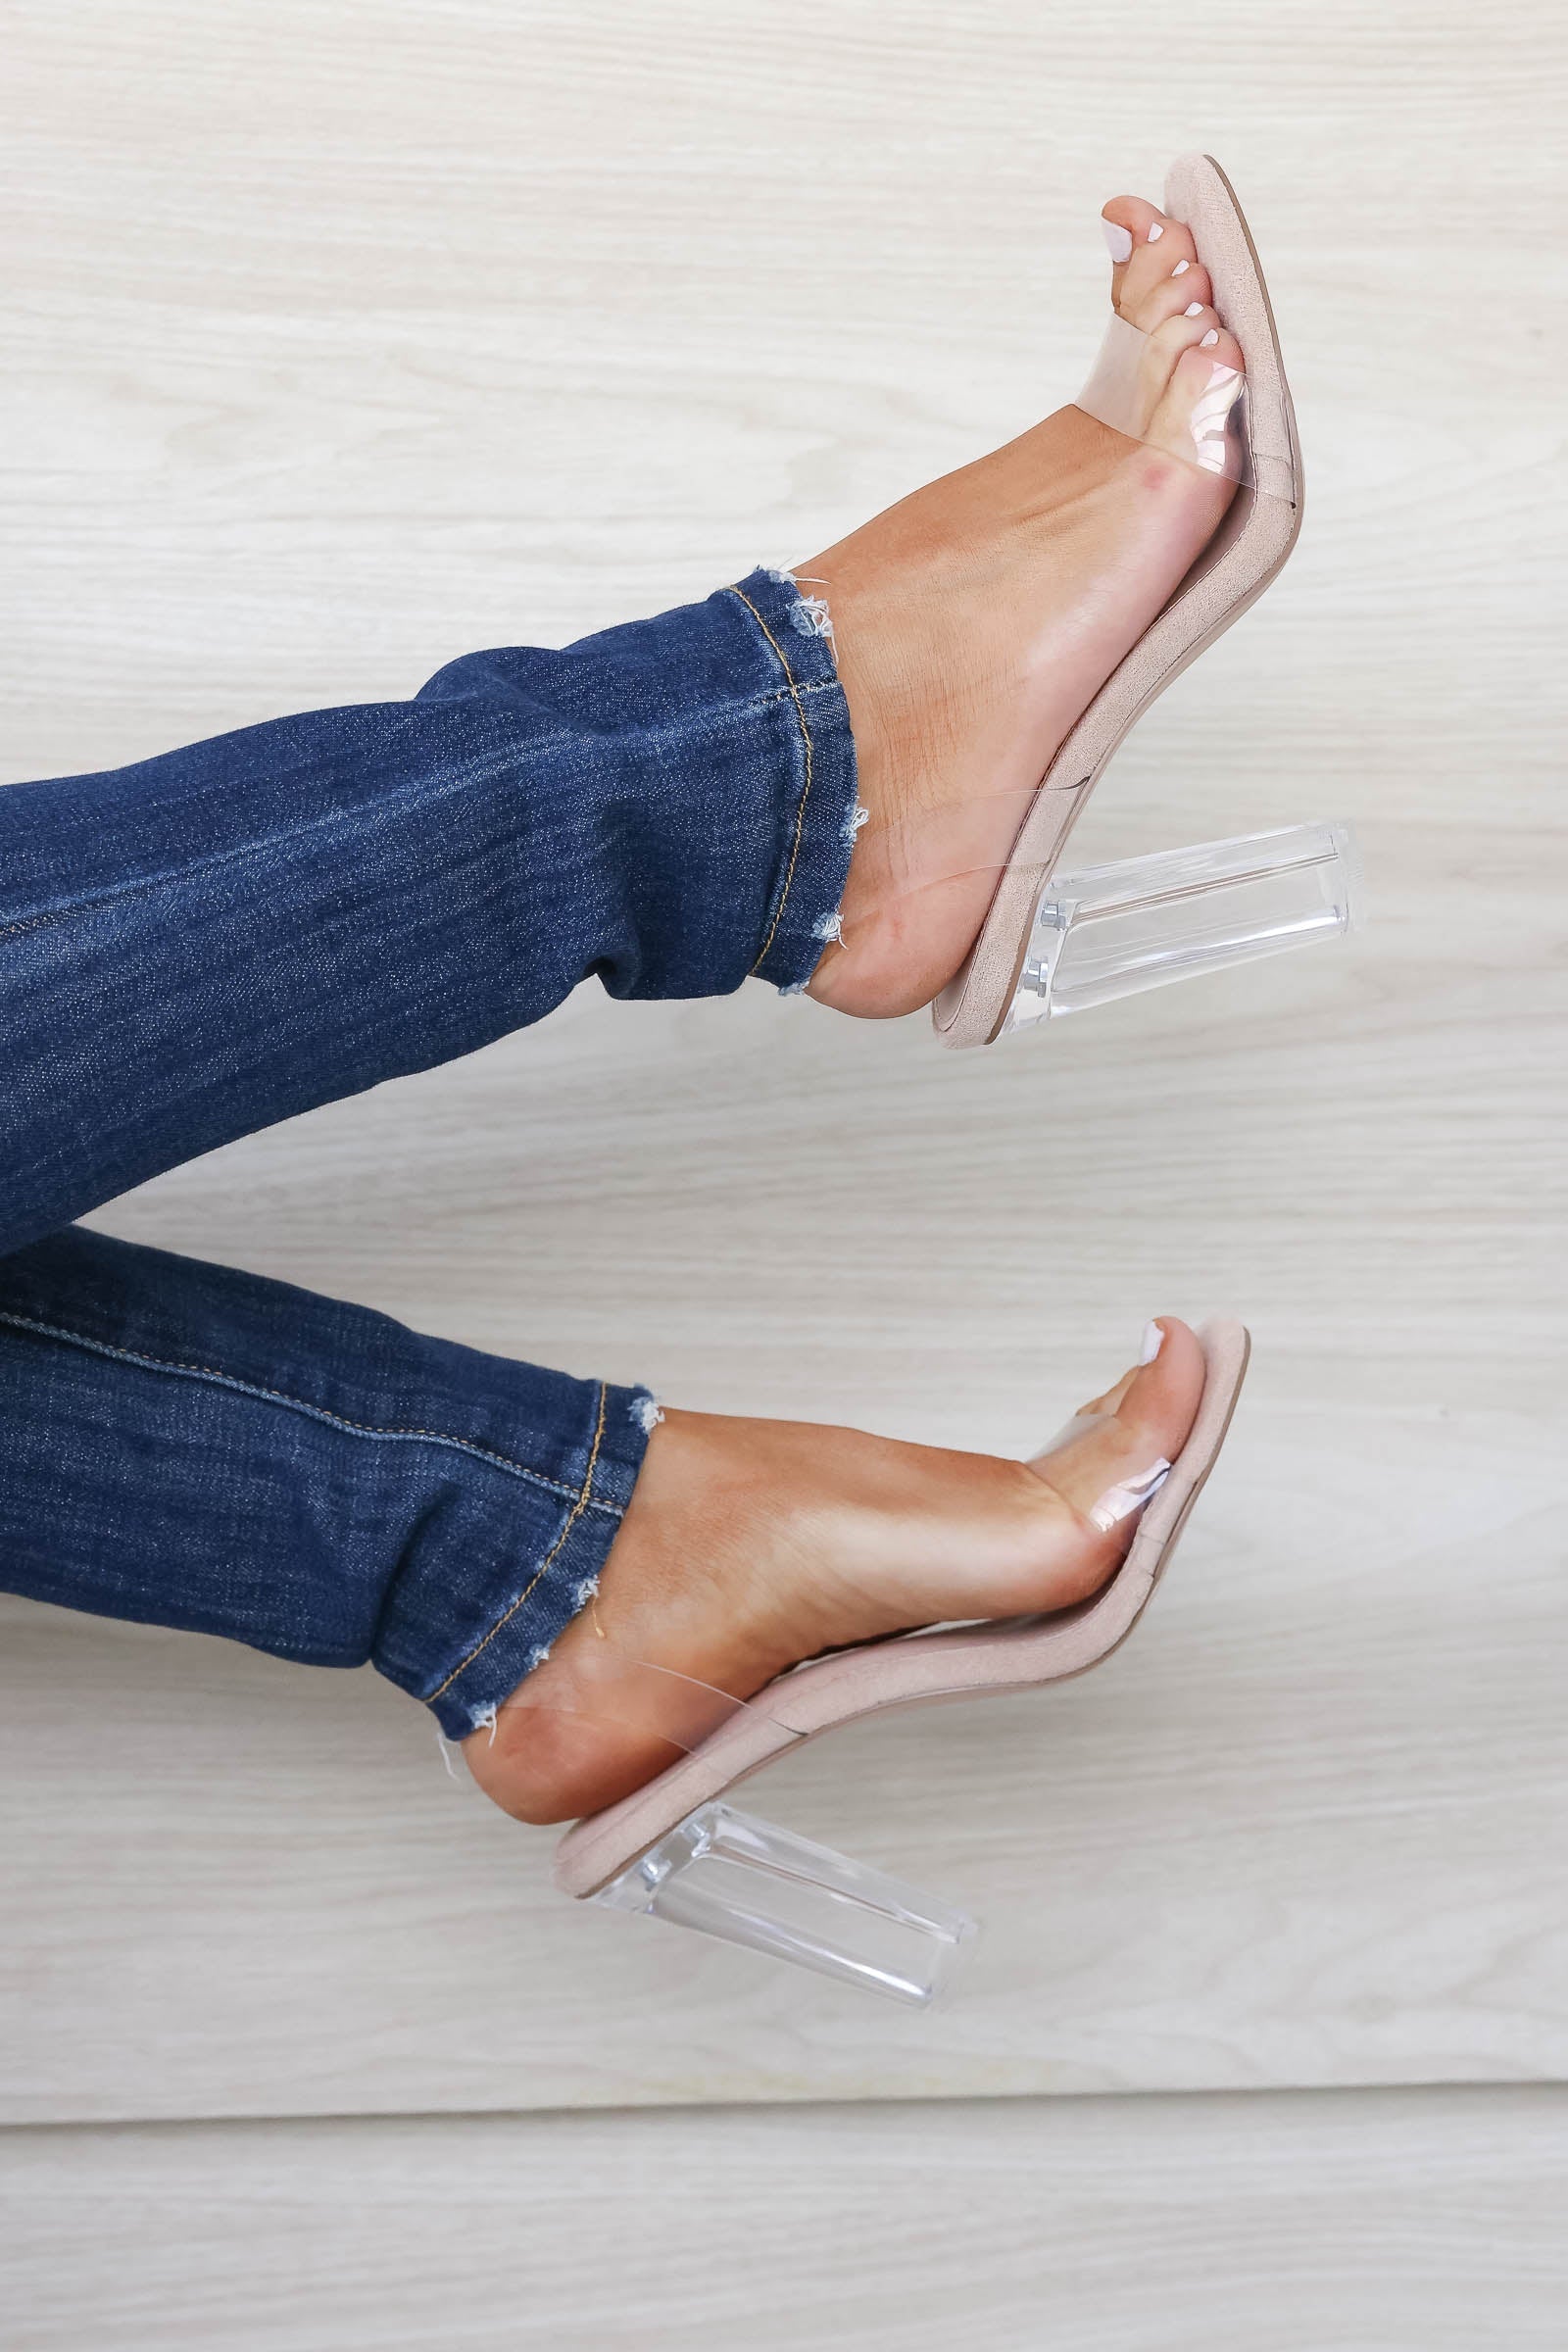 Clear Heels, Transparent & Clear Block Heels